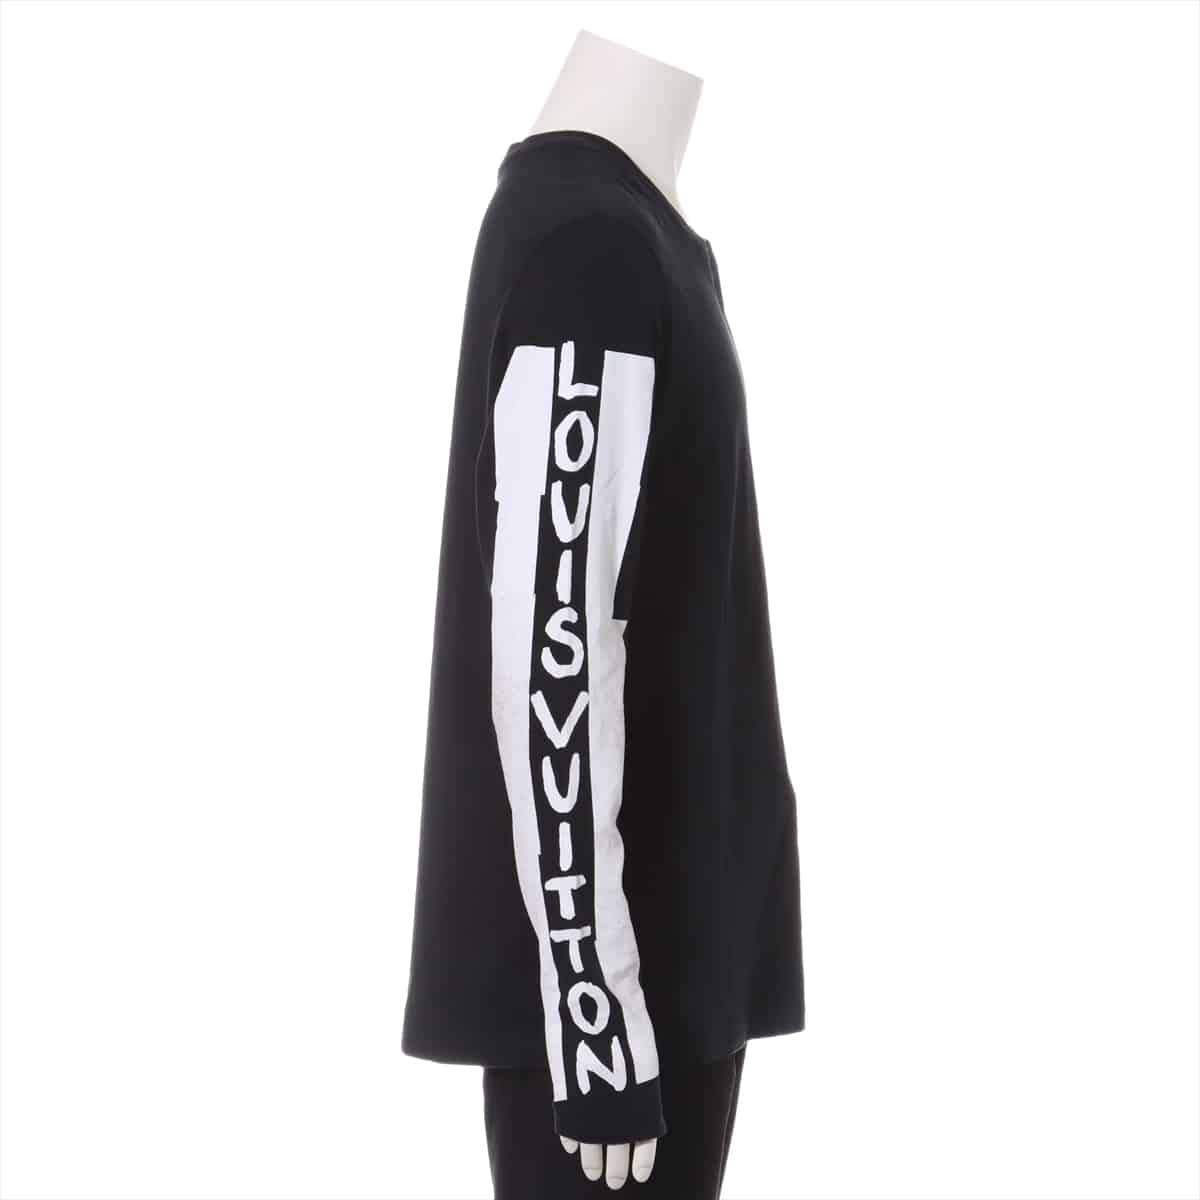 ルイヴィトン RM181 コットン Tシャツ M メンズ ブラック×ホワイト  ロゴ